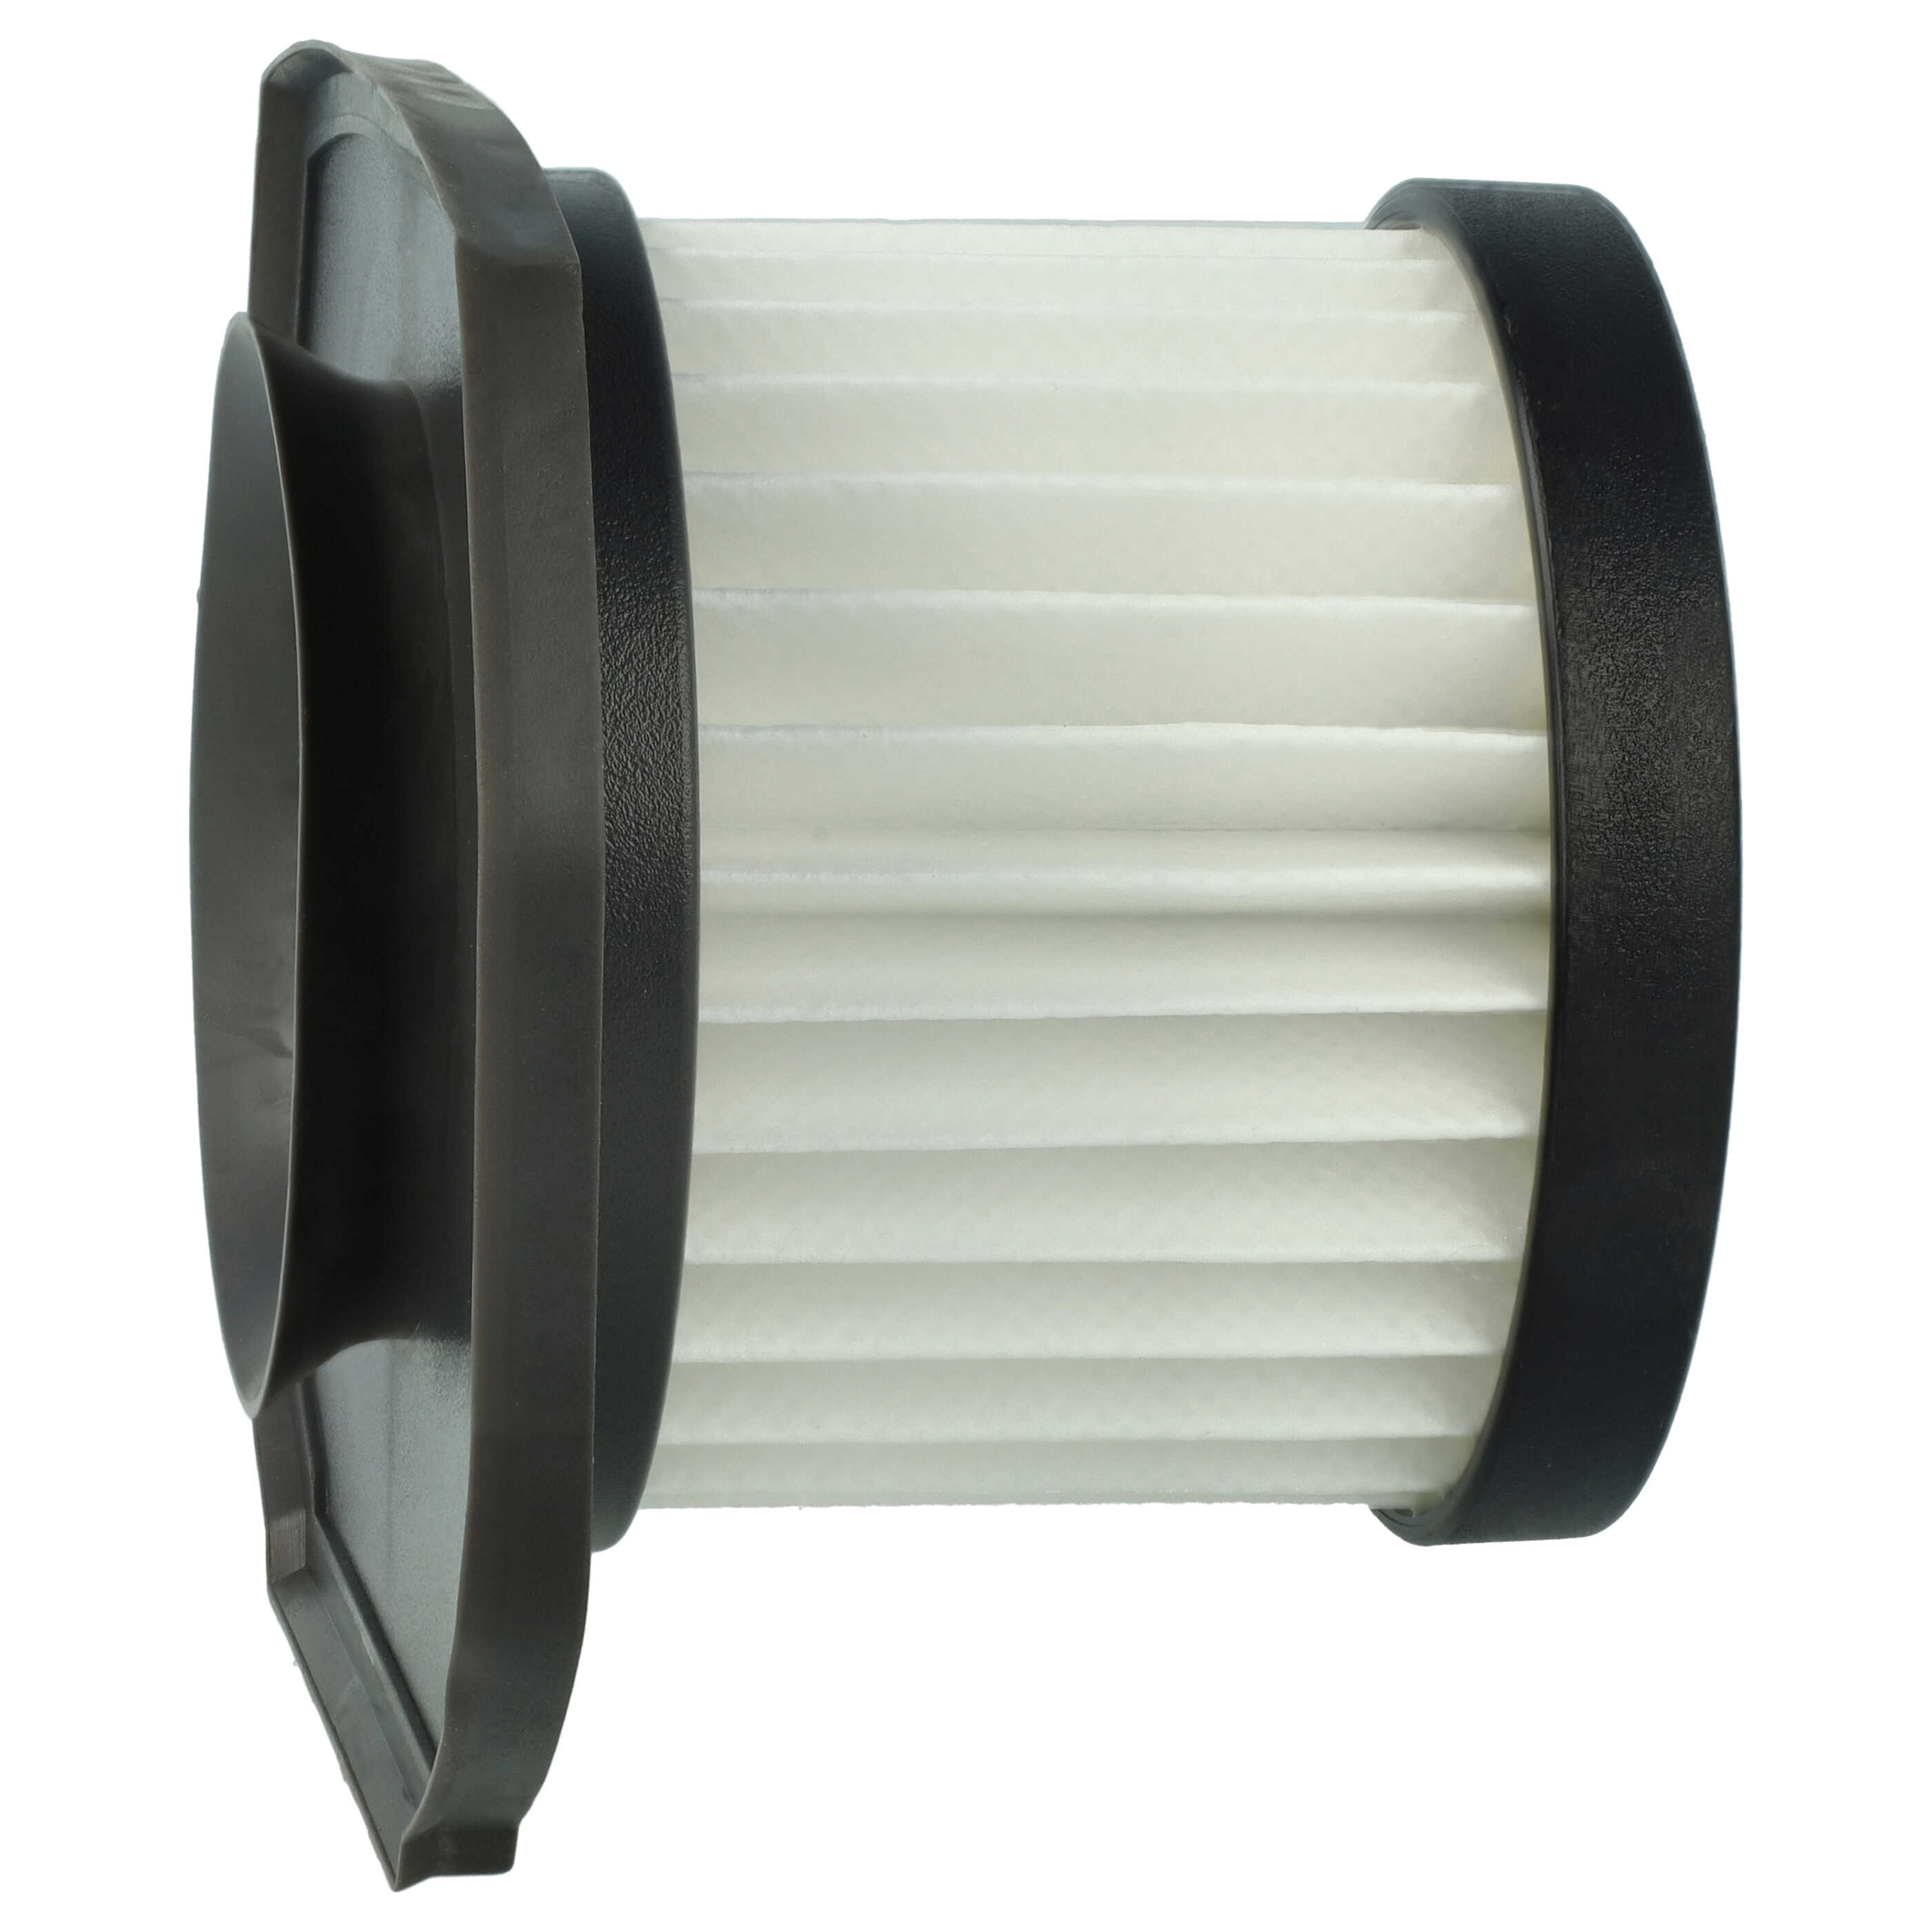 Filtro sostituisce Ryobi 313282001 per aspirapolvere - filtro HEPA, nero / bianco